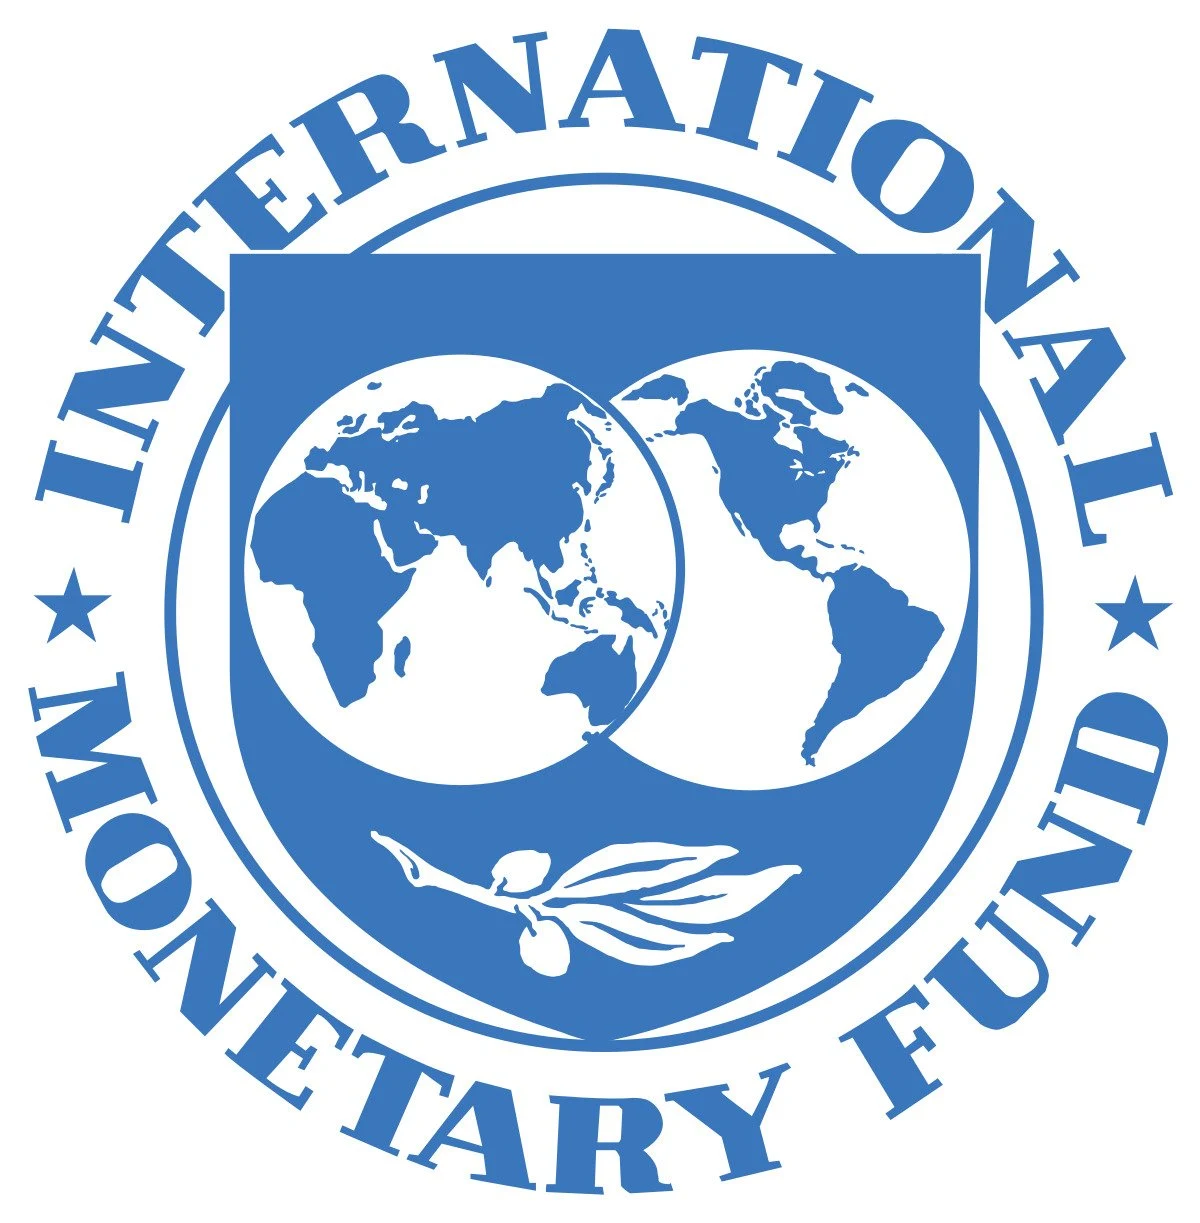 International Monetary Fund (IMF) Fund Internship Program 2021